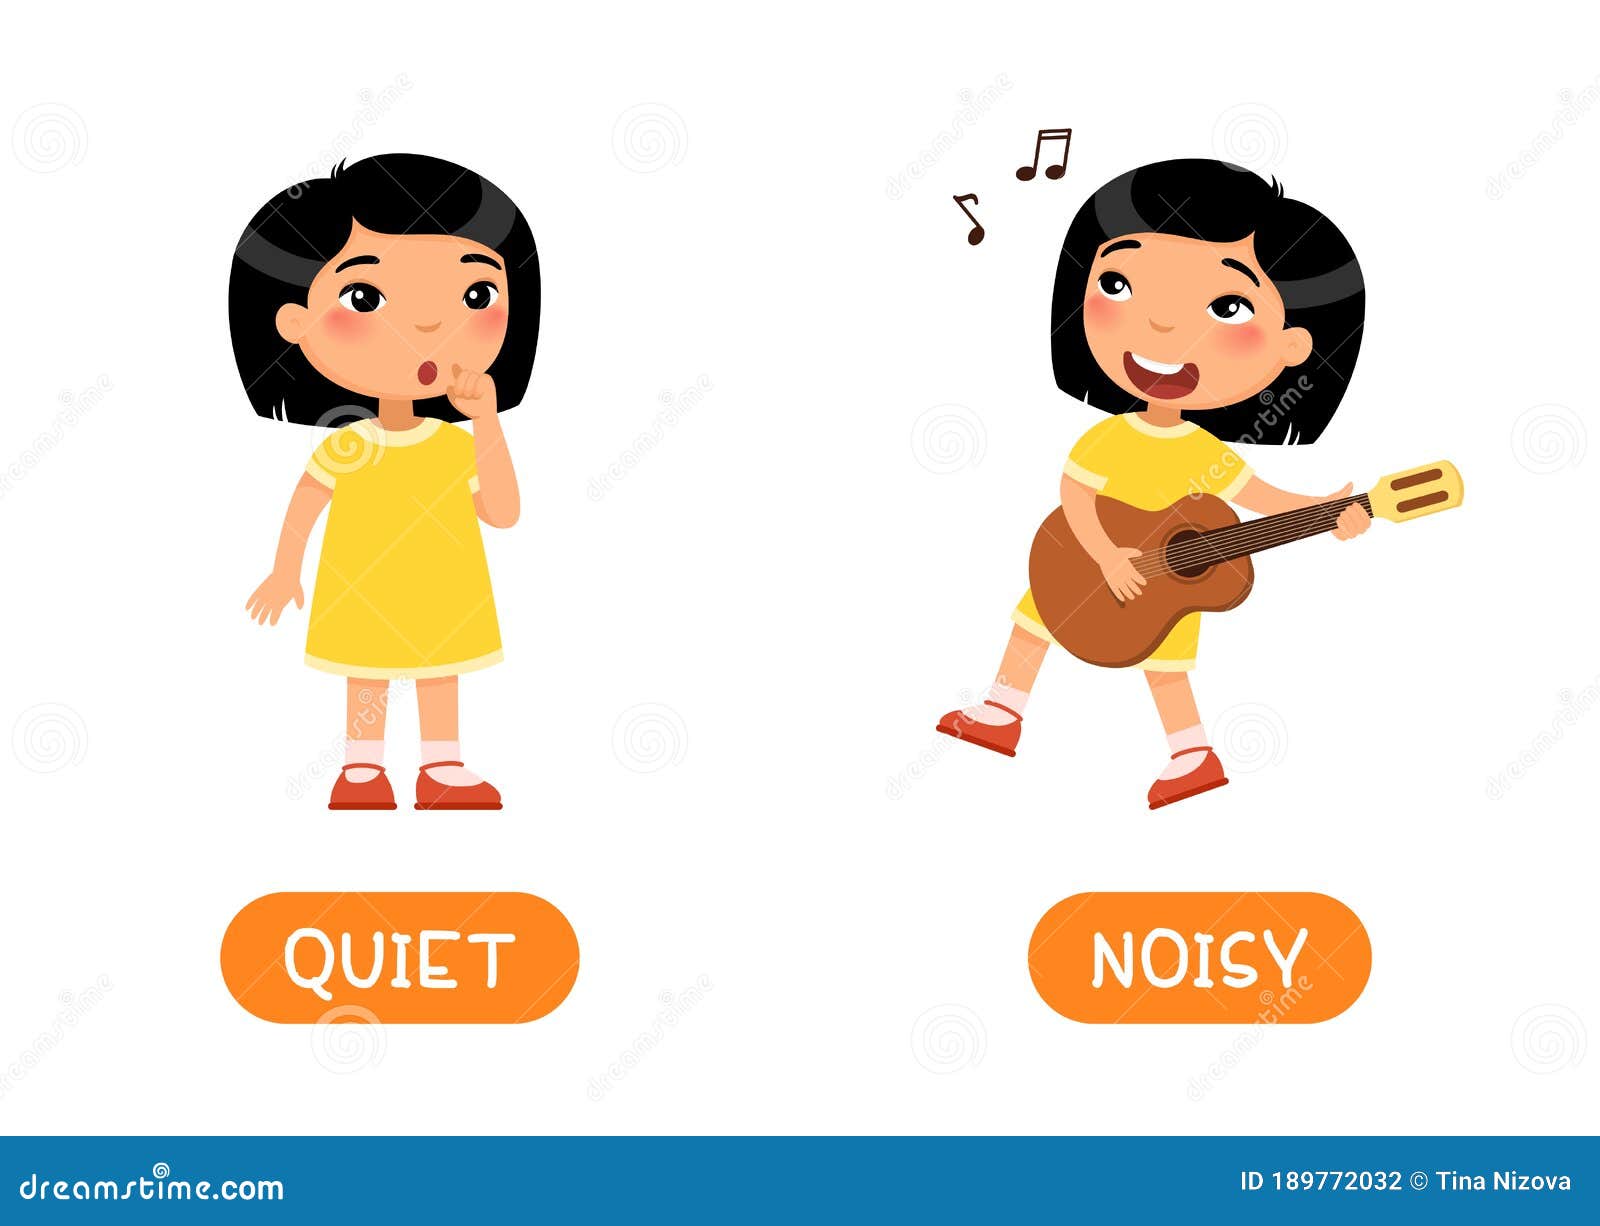 Quite little. Noisy quiet. Картинки Noisy quiet. Noisy картинка для детей. Громко и тихо иллюстрация.